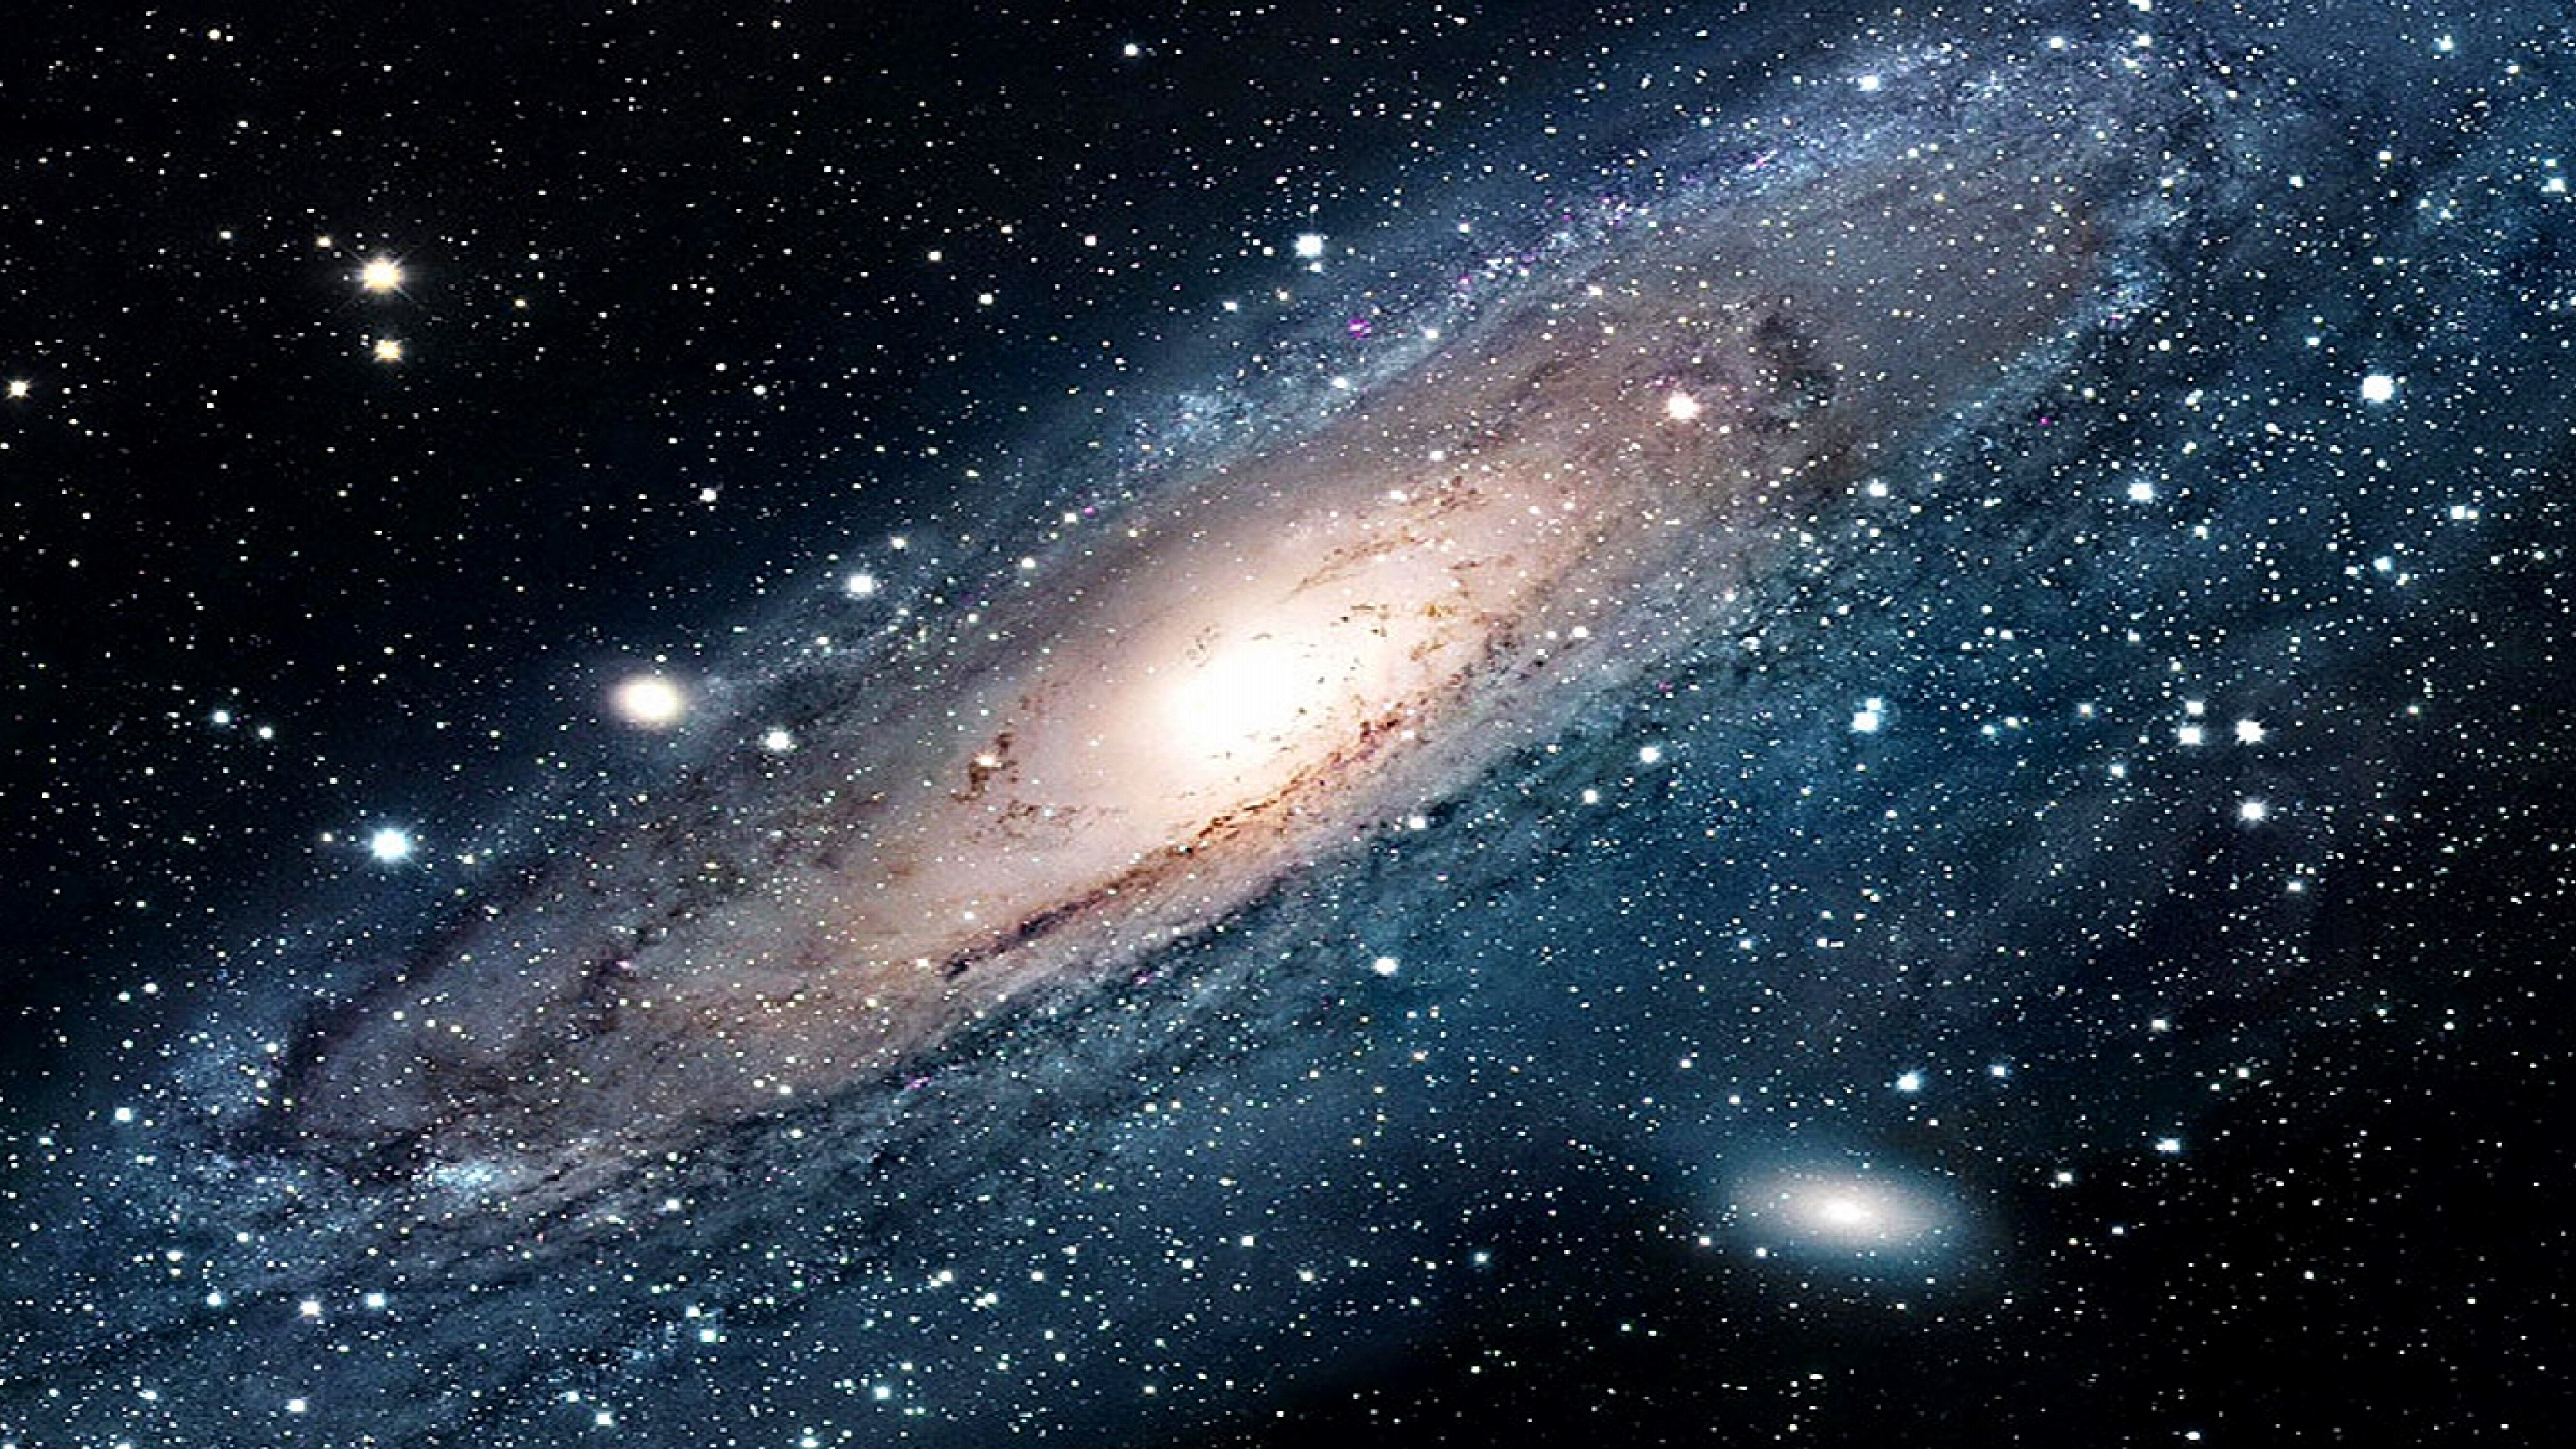 外层空间, 螺旋星系, 气氛, 宇宙, 天文学对象 壁纸 3840x2160 允许